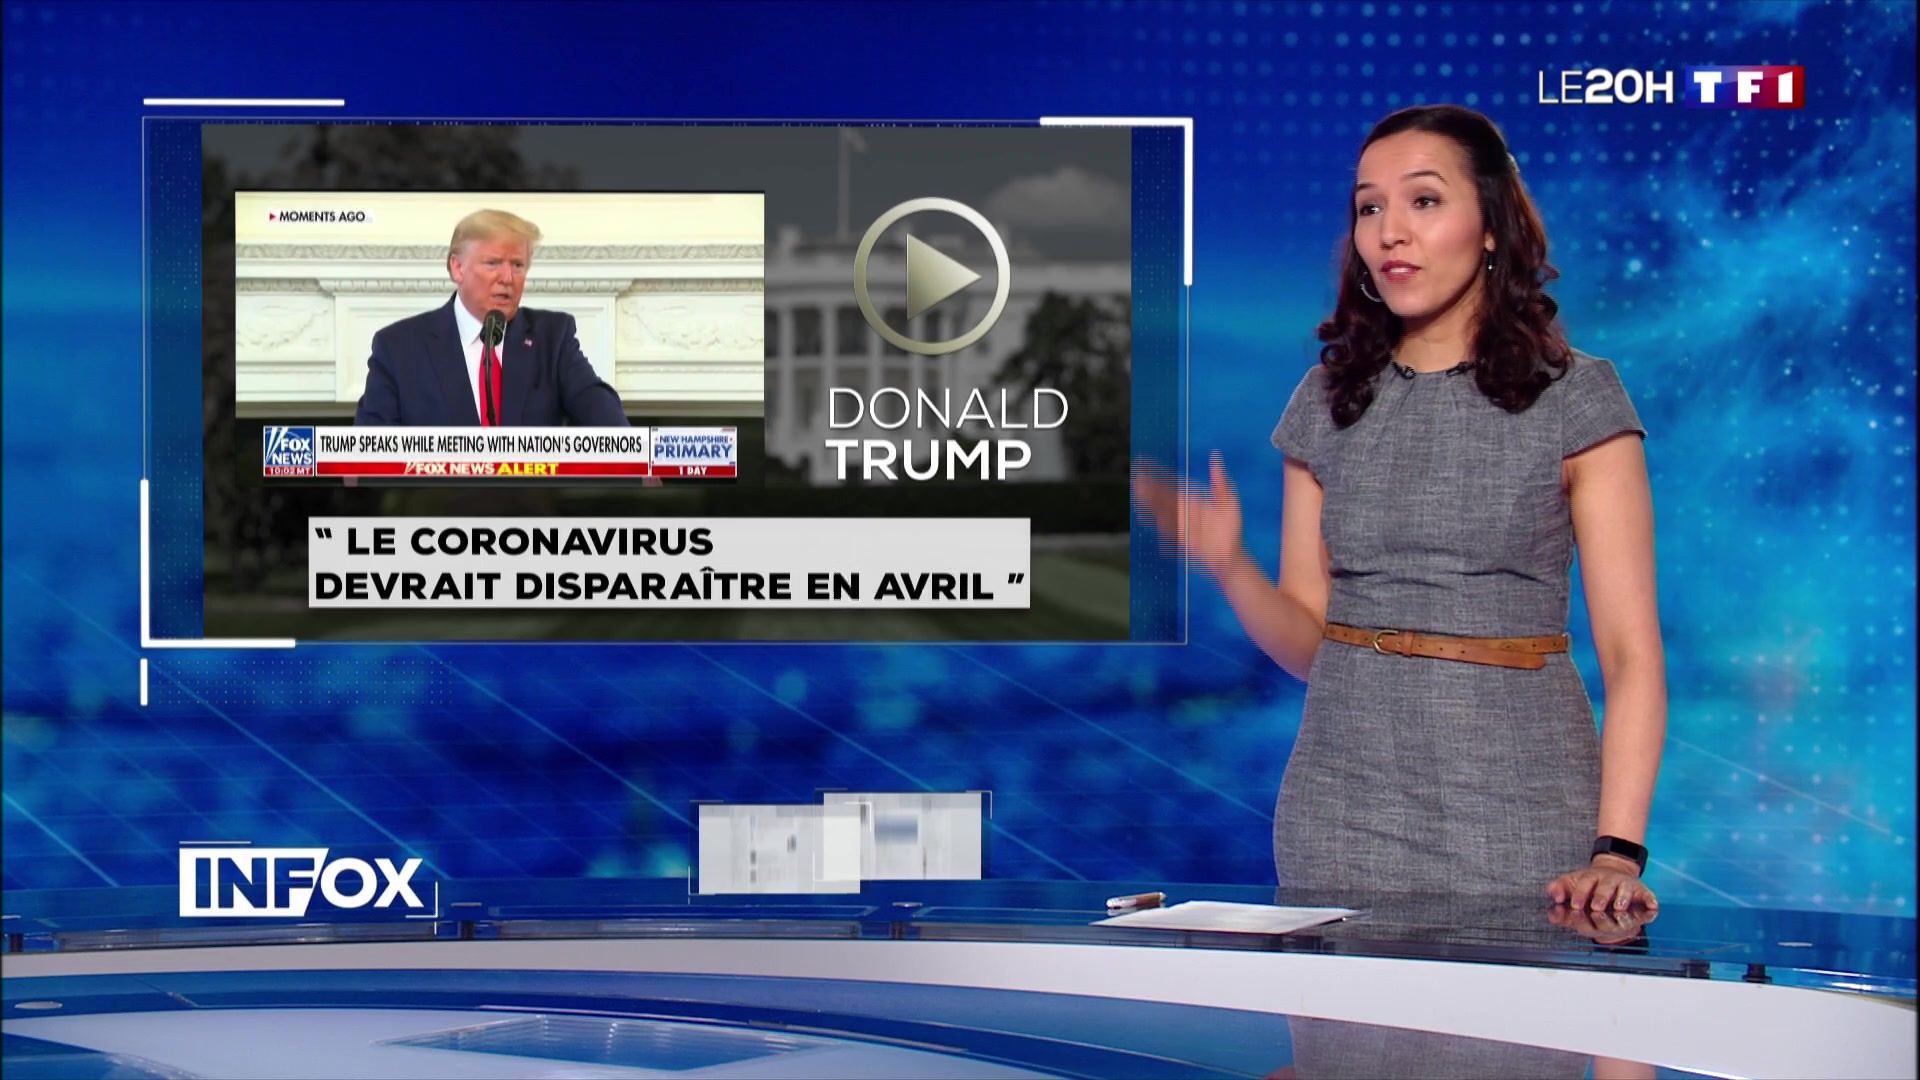 Info / Infox : les rumeurs sur Internet autour du coronavirus